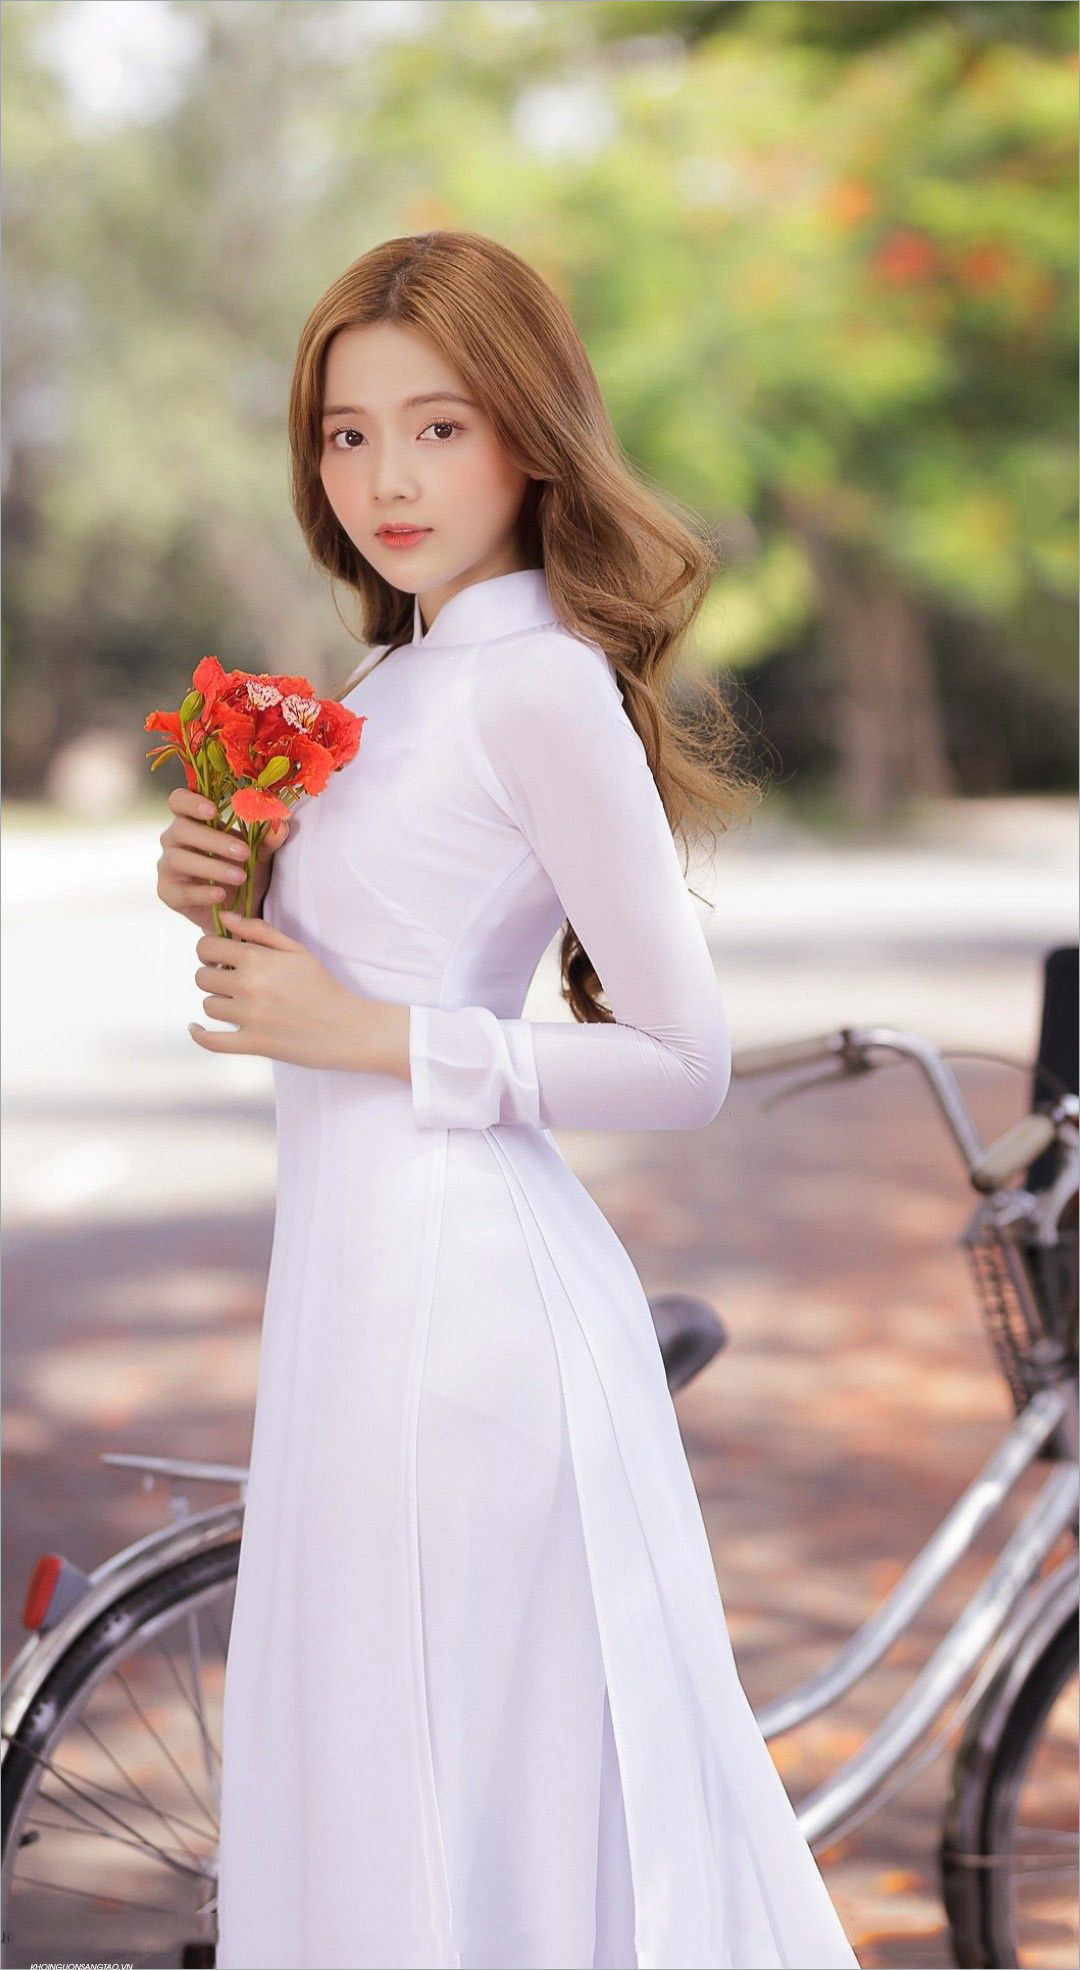 Gái xinh áo dài: Áo dài là trang phục truyền thống đặc trưng của người Việt Nam, và khi được khoác lên những cô gái xinh đẹp, nó lại trở nên lộng lẫy, quý phái và đầy sức hút. Hãy thưởng thức những hình ảnh gái xinh áo dài tại đây.